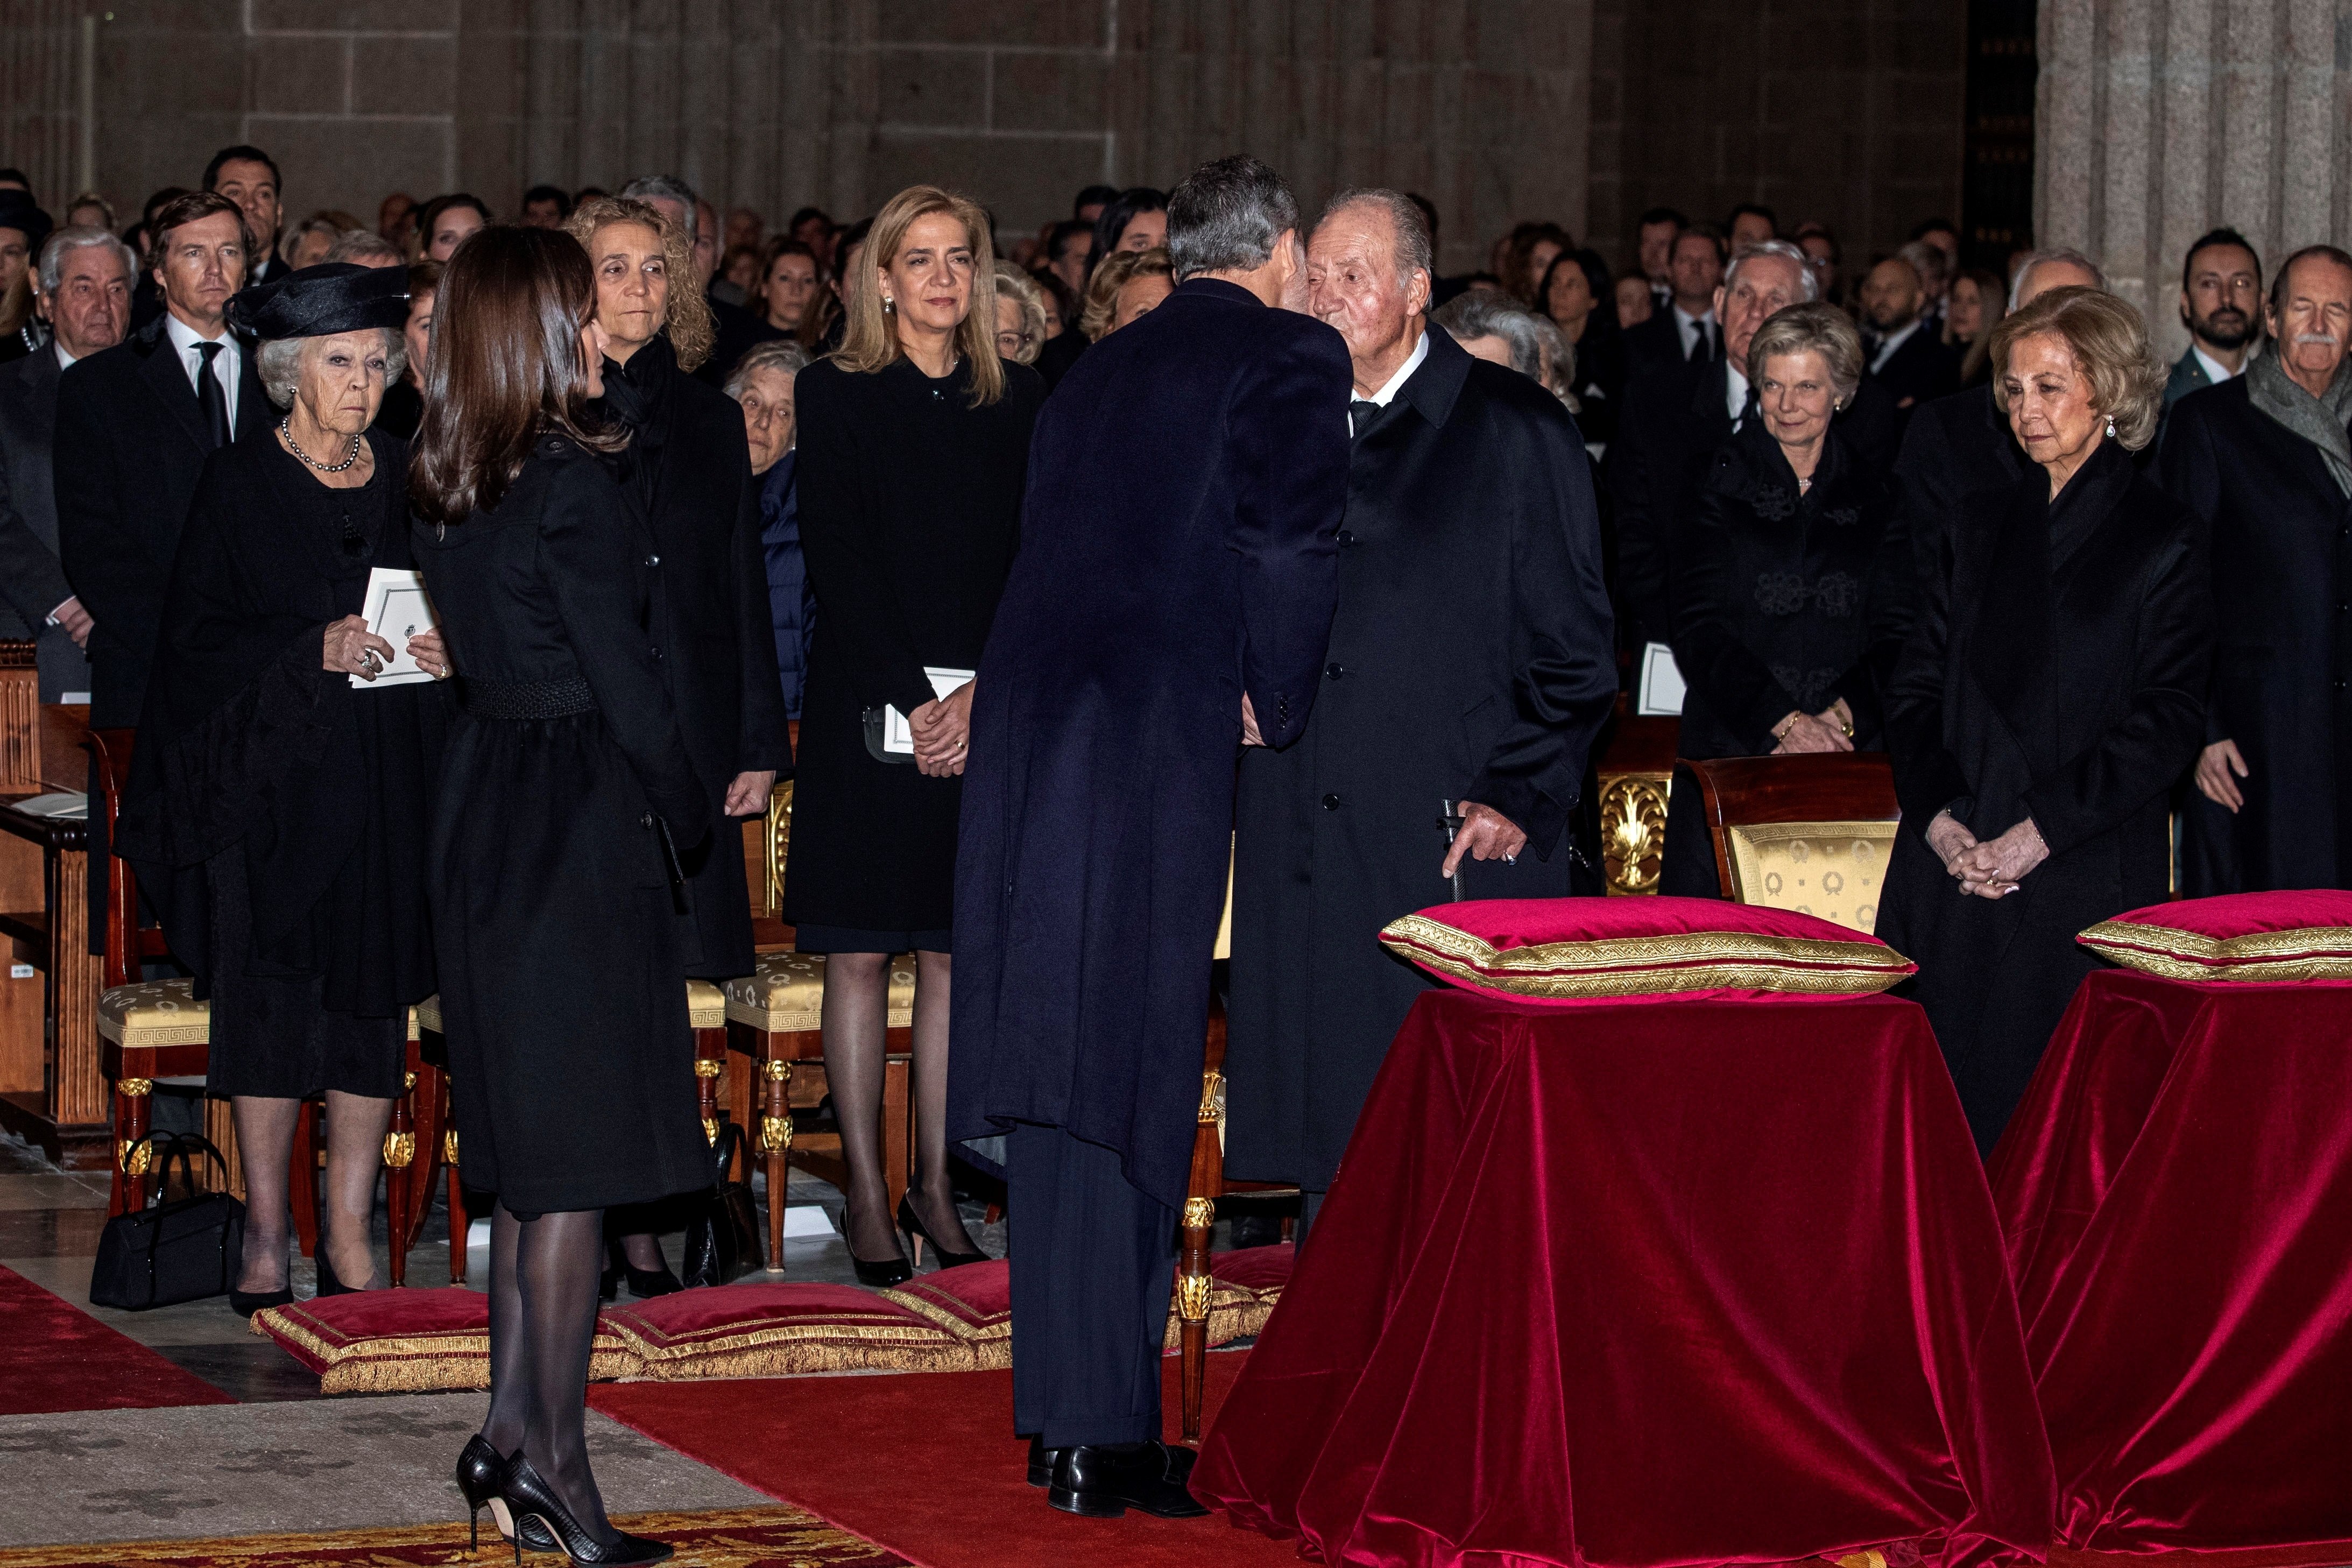 La presència de Joan Carles I a Londres incomoda La Moncloa: "Felip representarà Espanya"